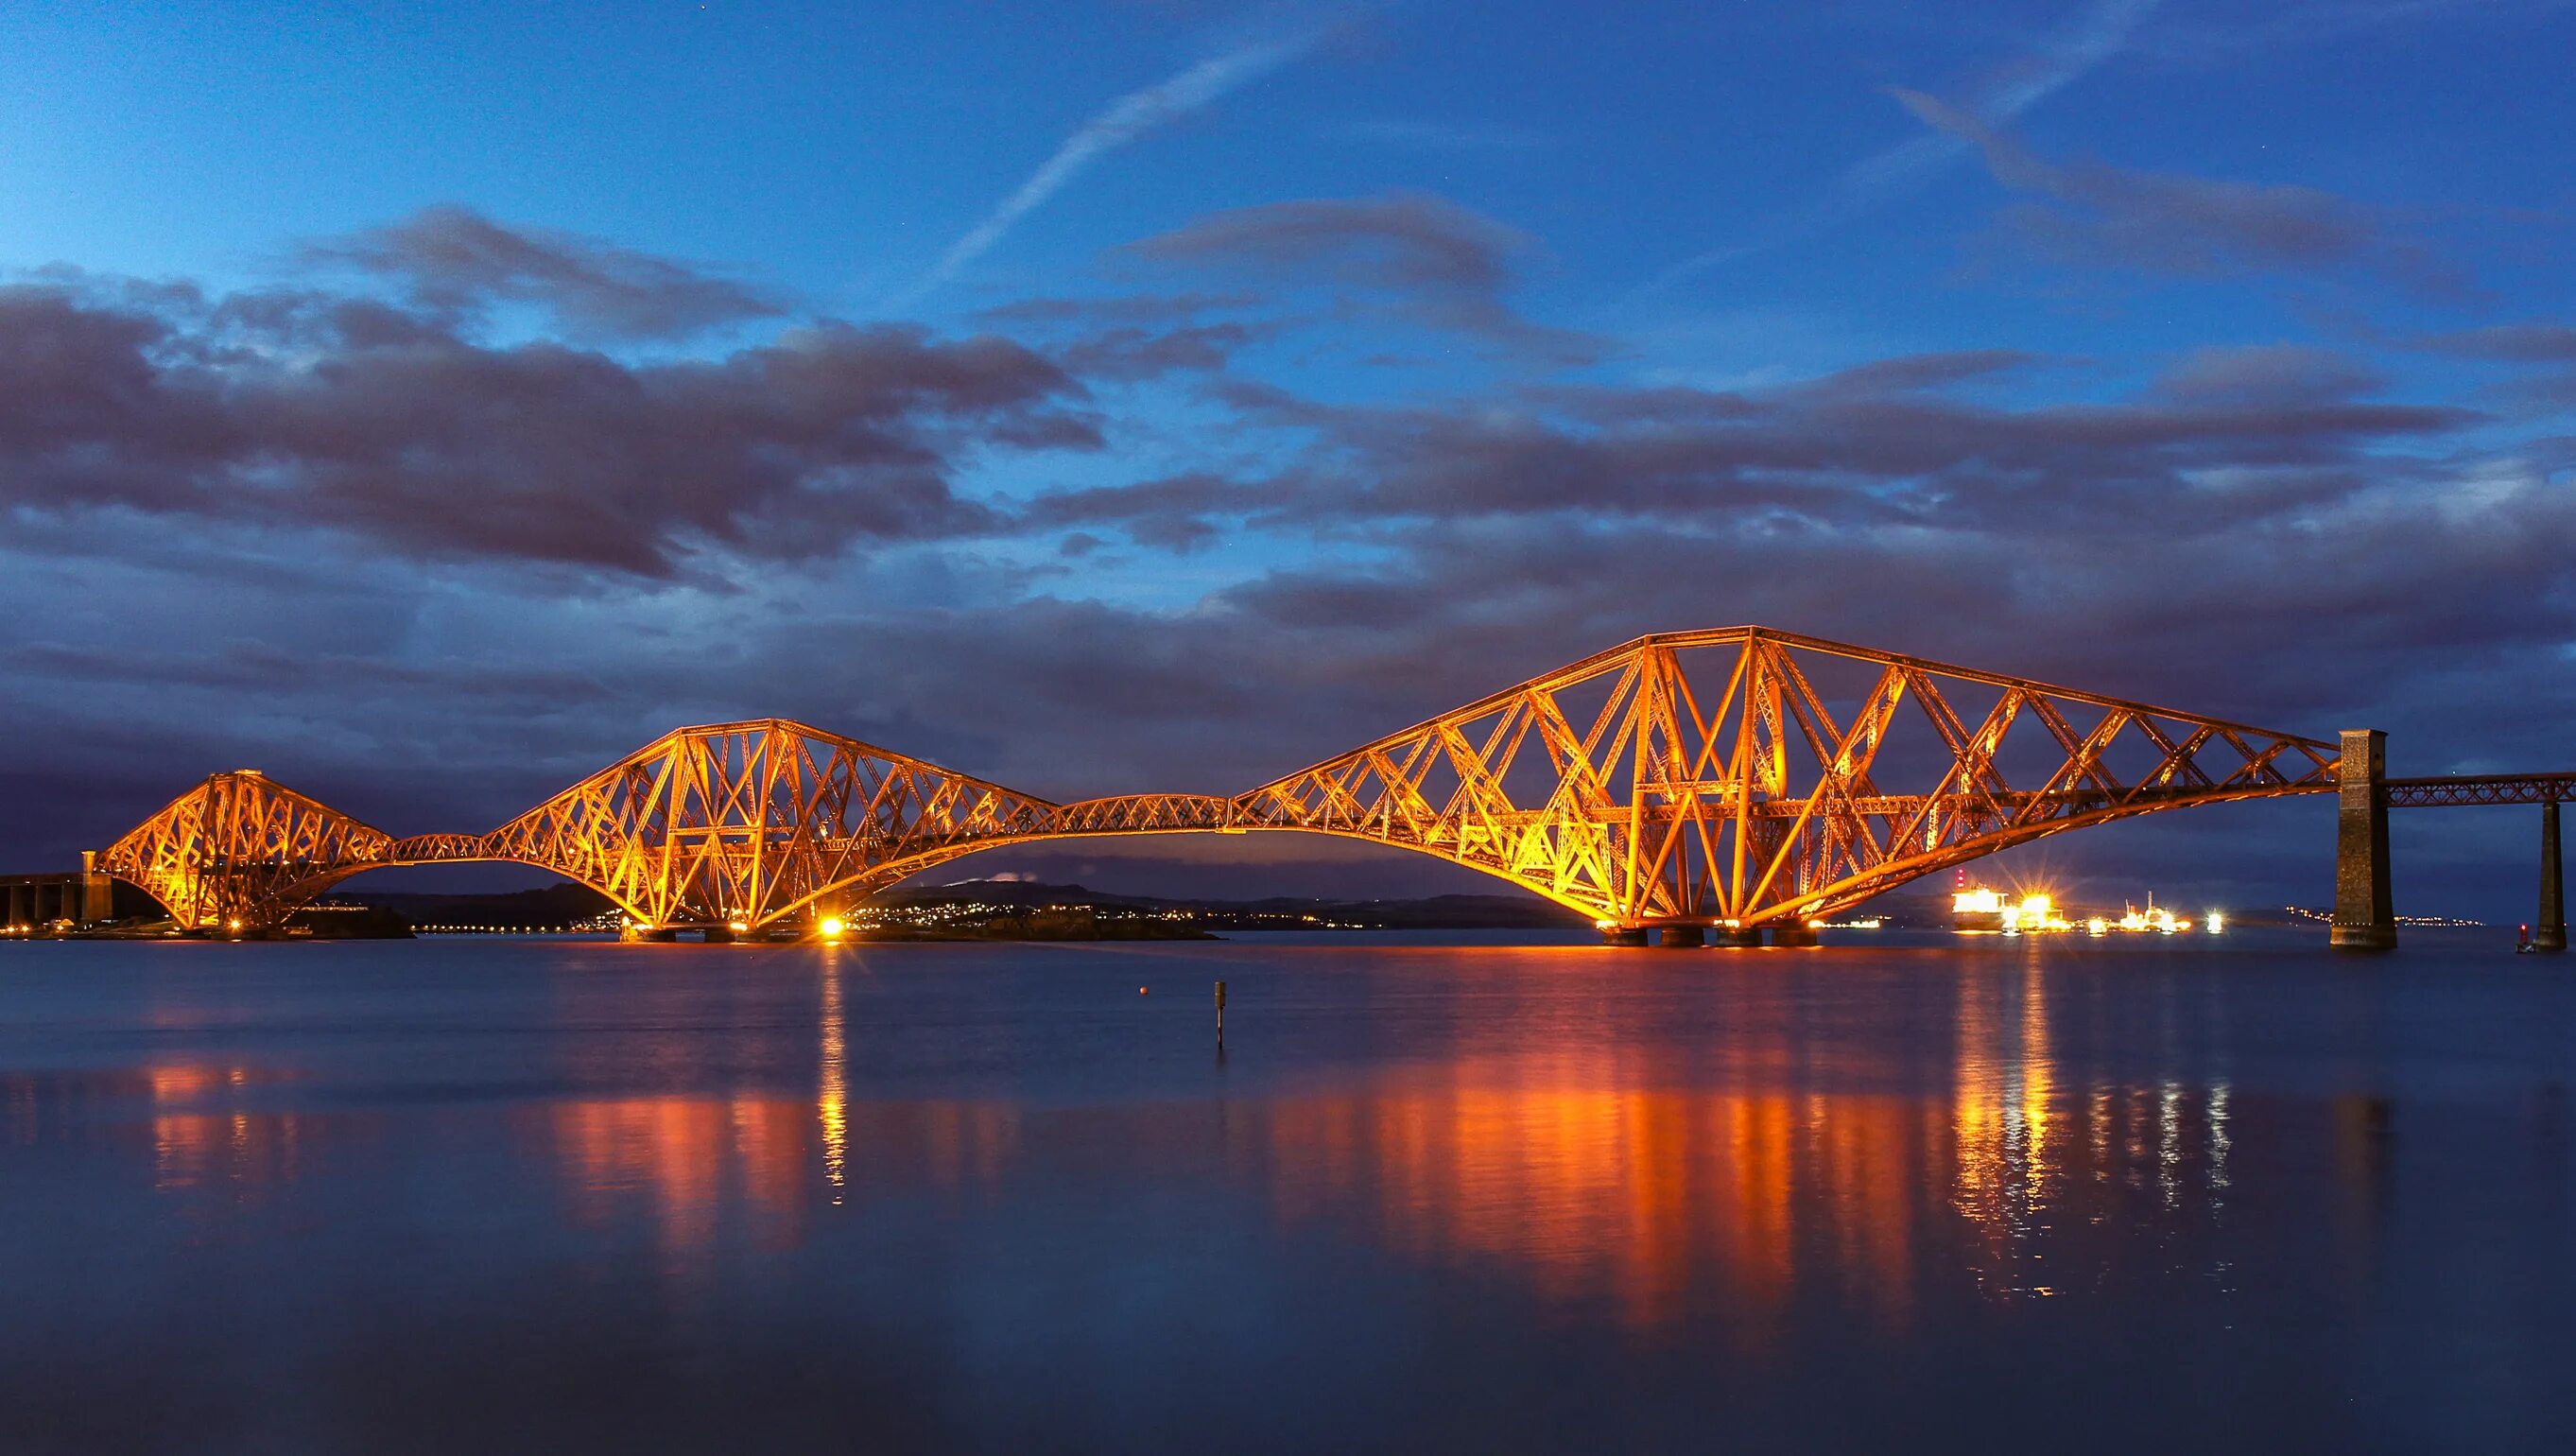 Бридж. Мост Форт-бридж Эдинбург. Мост через Ферт-оф-Форт, Шотландия,. Мост Форт-бридж, Эдинбург, Шотландия. ОСТ Форт-бридж, Эдинбург, Шотландия.